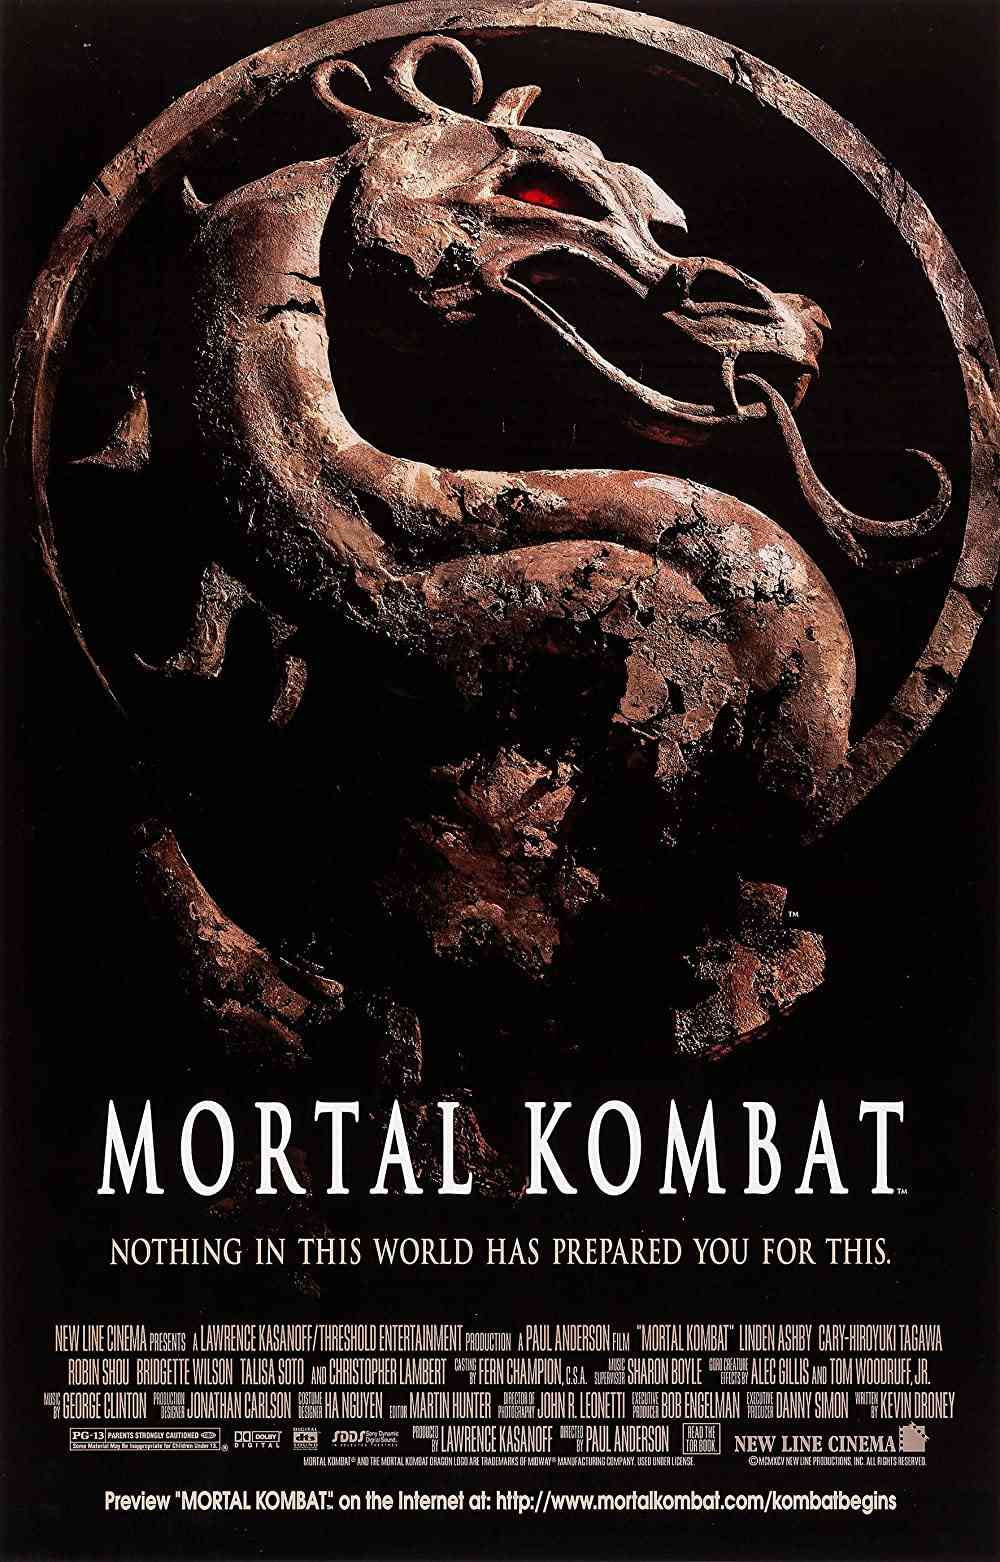 FULL MOVIE: Mortal Kombat (1995) [Action]